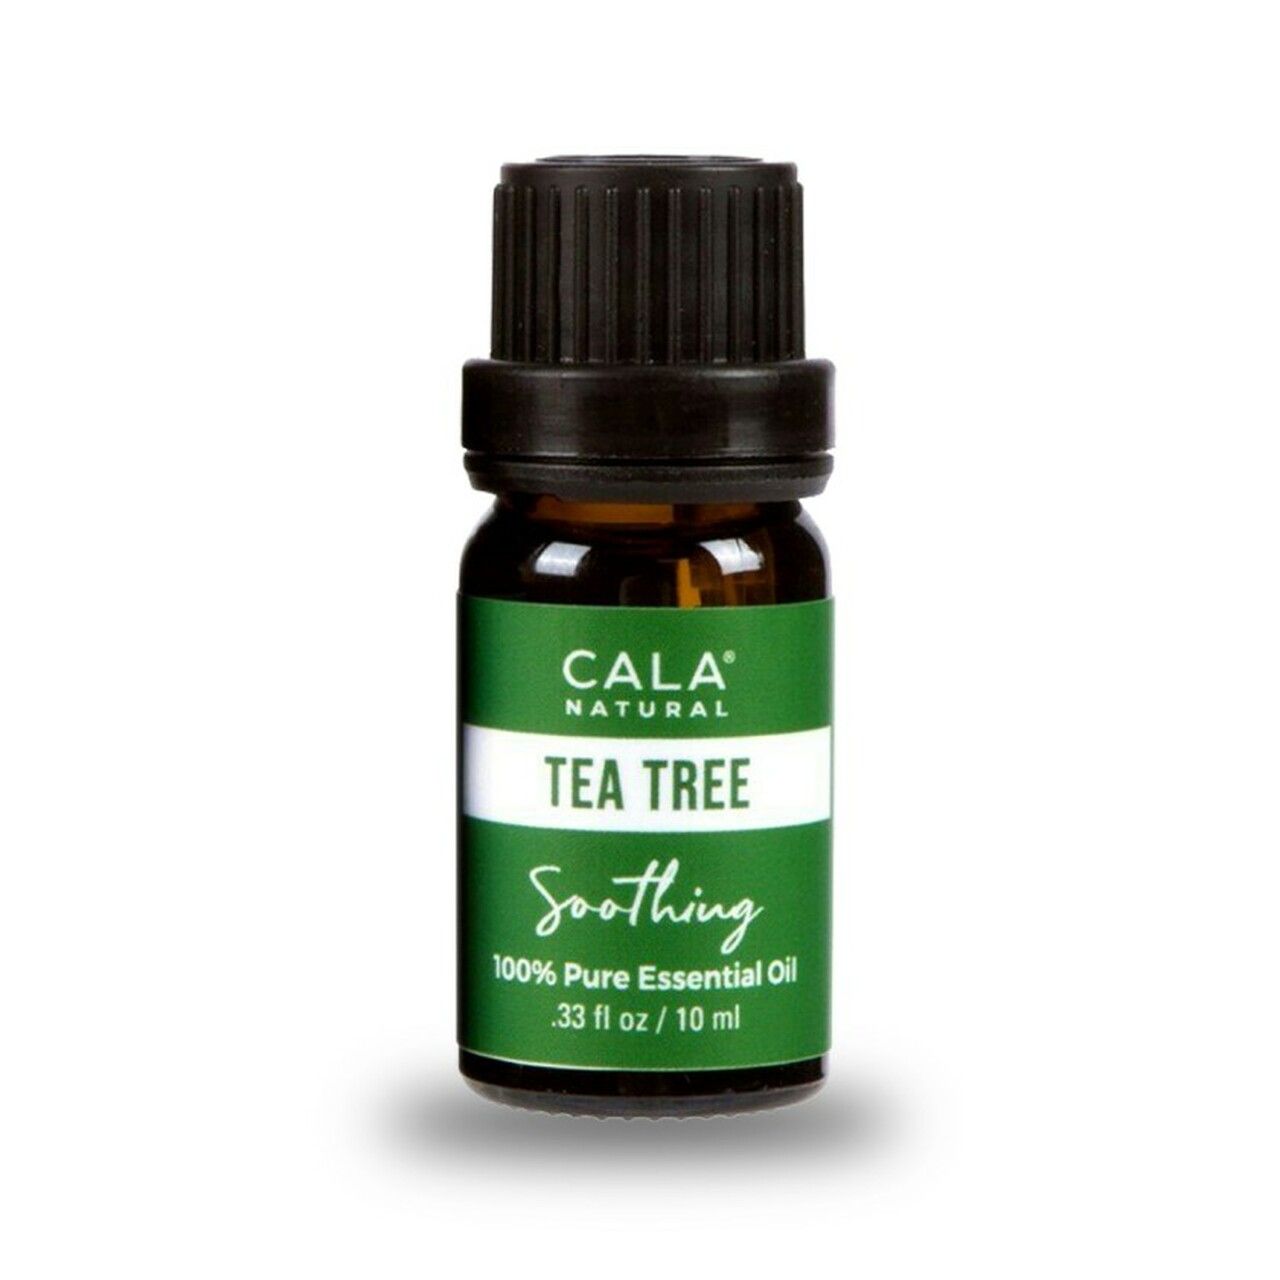 Cala essential oils calm retreat trio